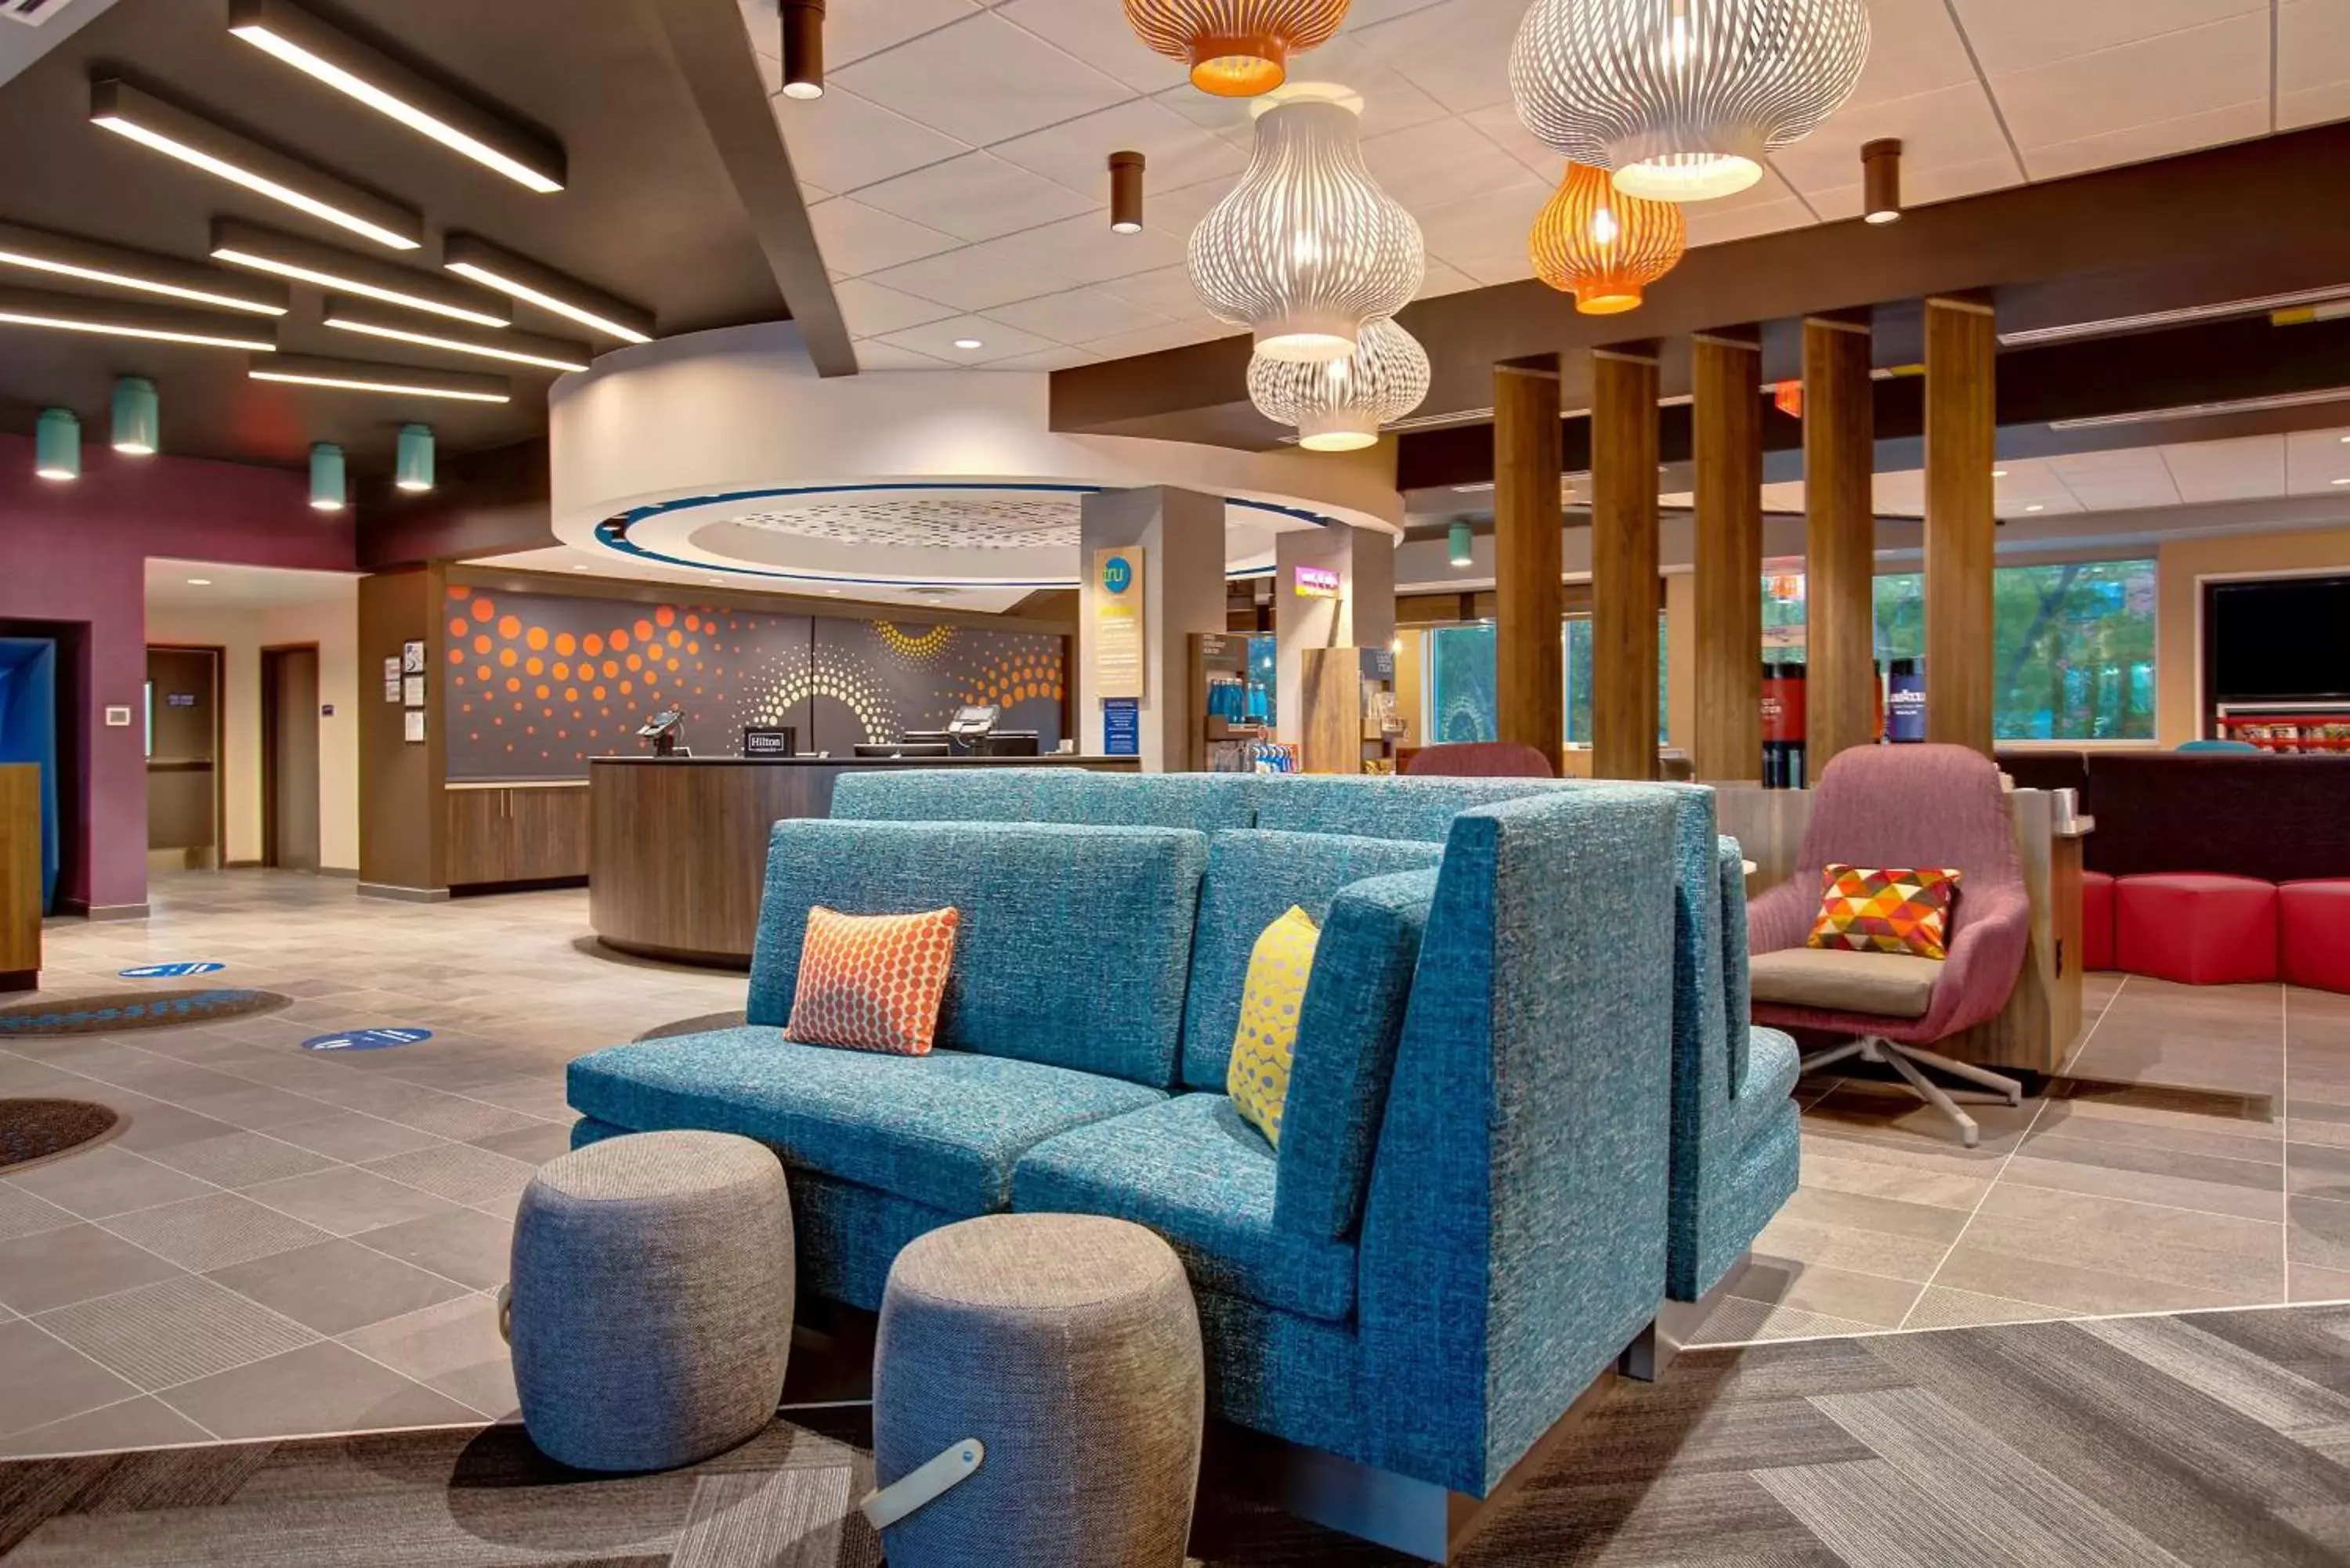 Lobby or reception, Lobby/Reception in Tru By Hilton Northlake Fort Worth, Tx